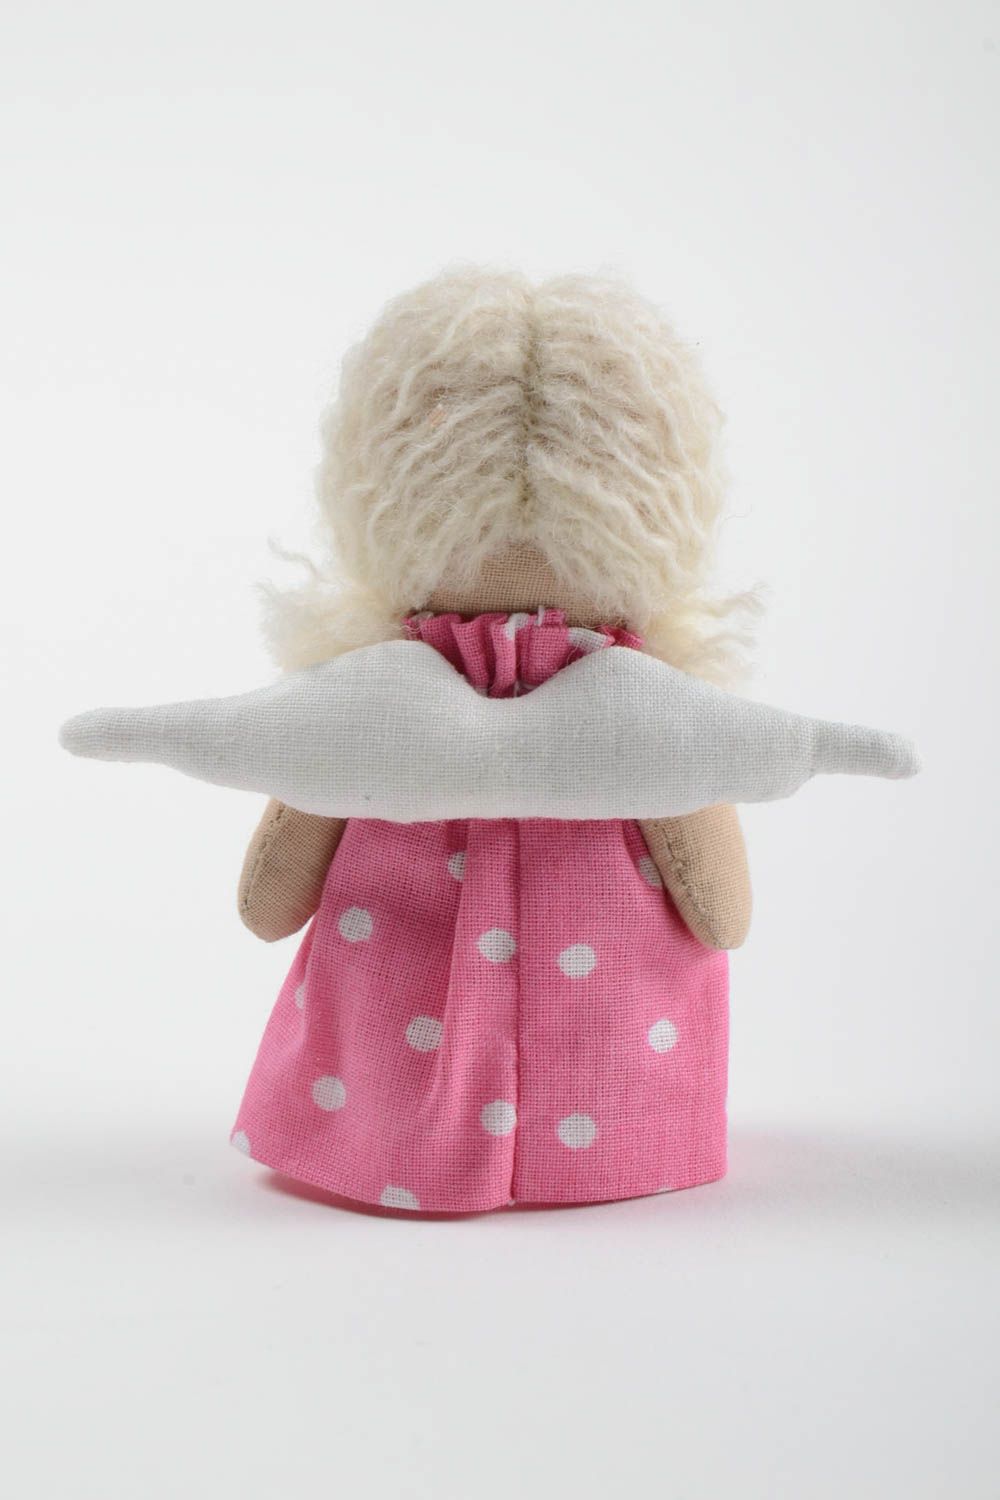 Ange en tissu fait main petit en robe rose en coton jouet original pour enfant photo 3